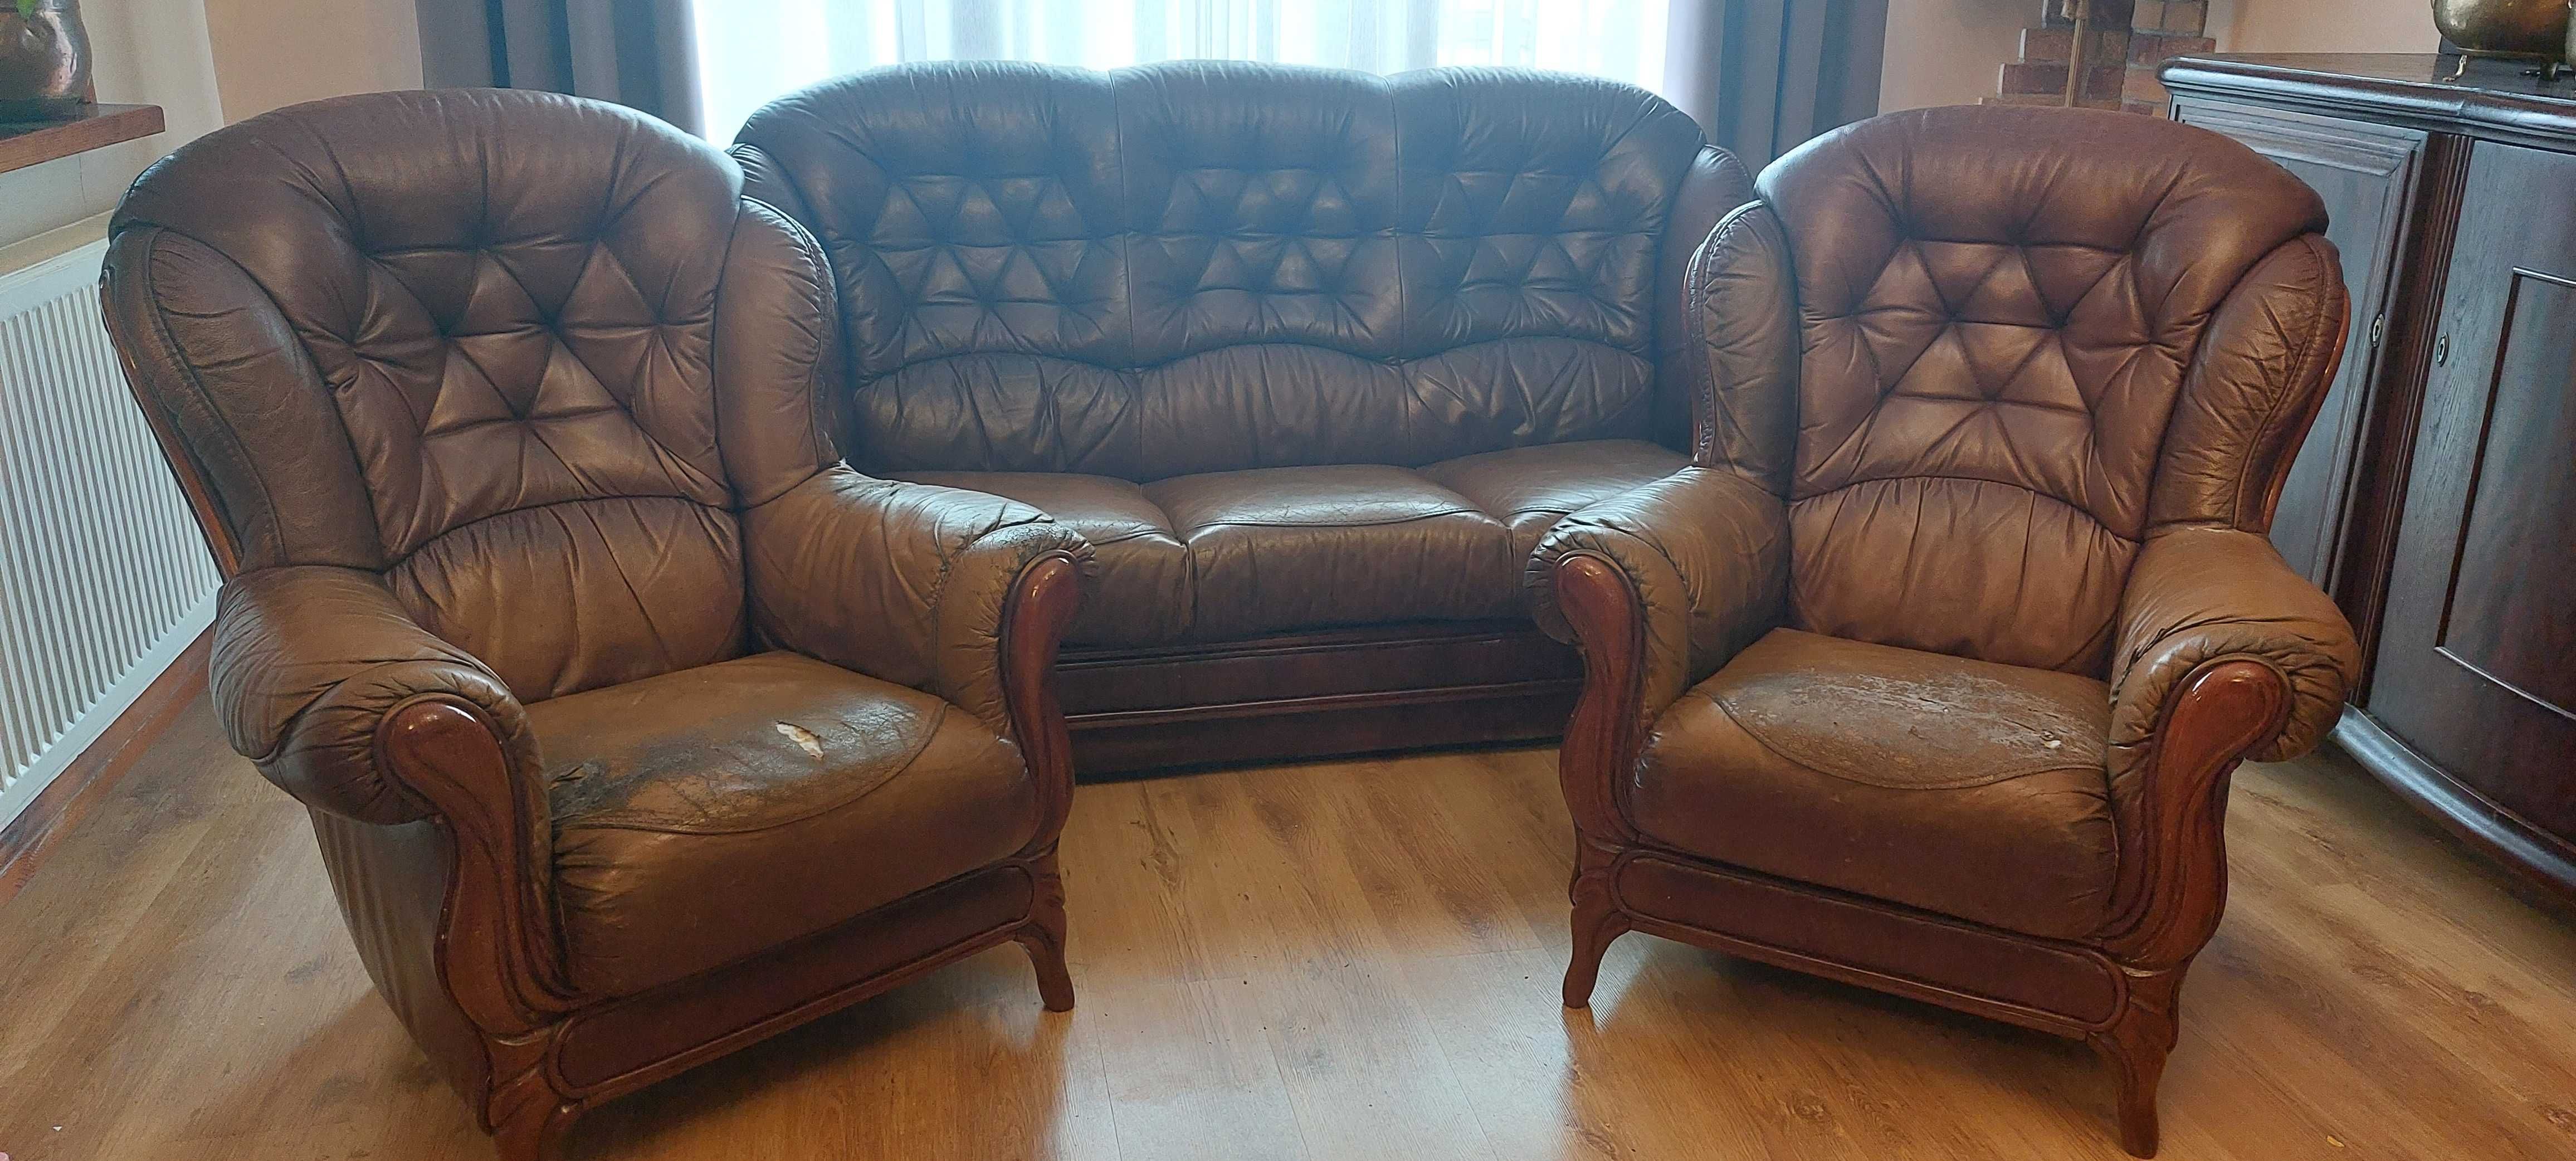 skórzana kanapa z funkcją spania + dwa fotele gratis do renowacji